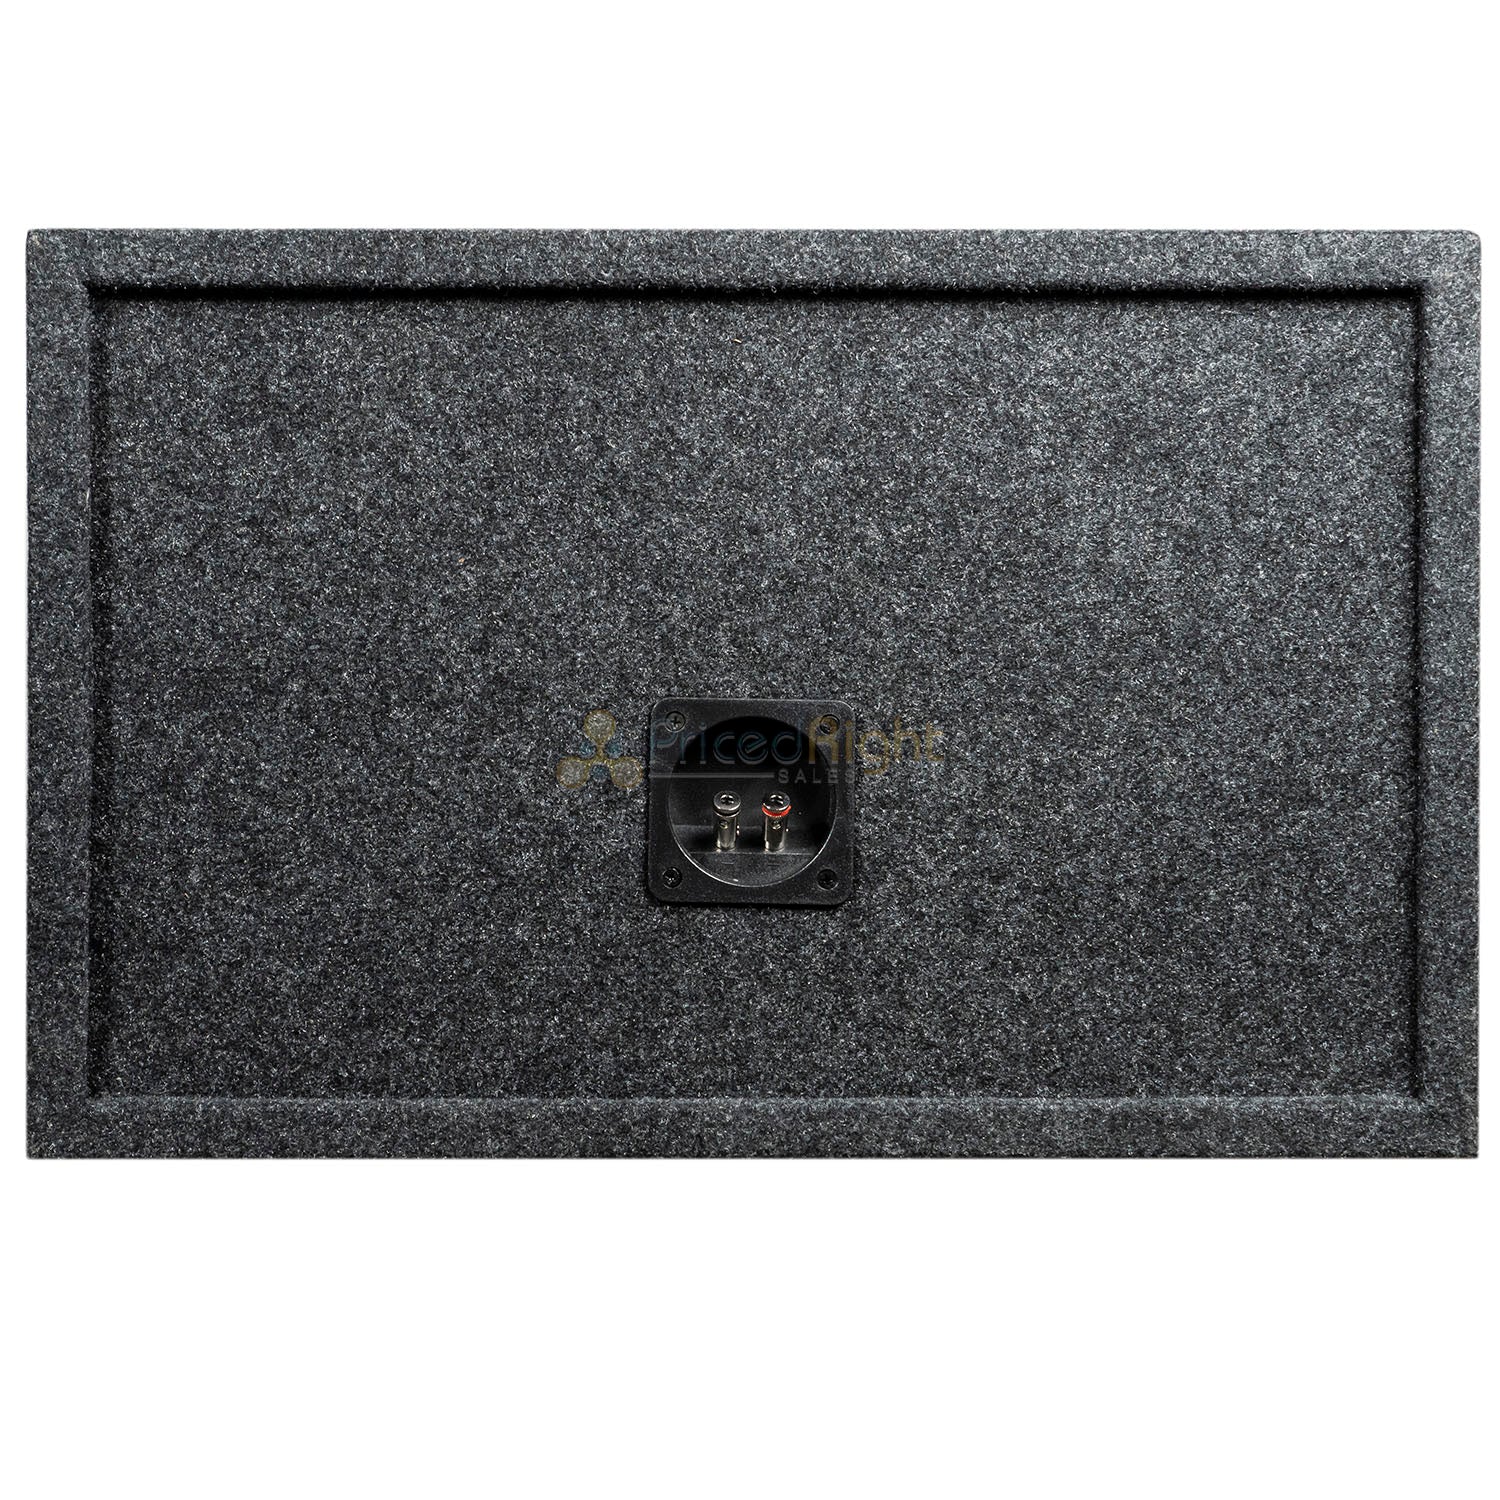 Dual 12" Ported Subwoofer Box Enclosure 3/4" MDF Vented Sub Box RI Audio Carpet